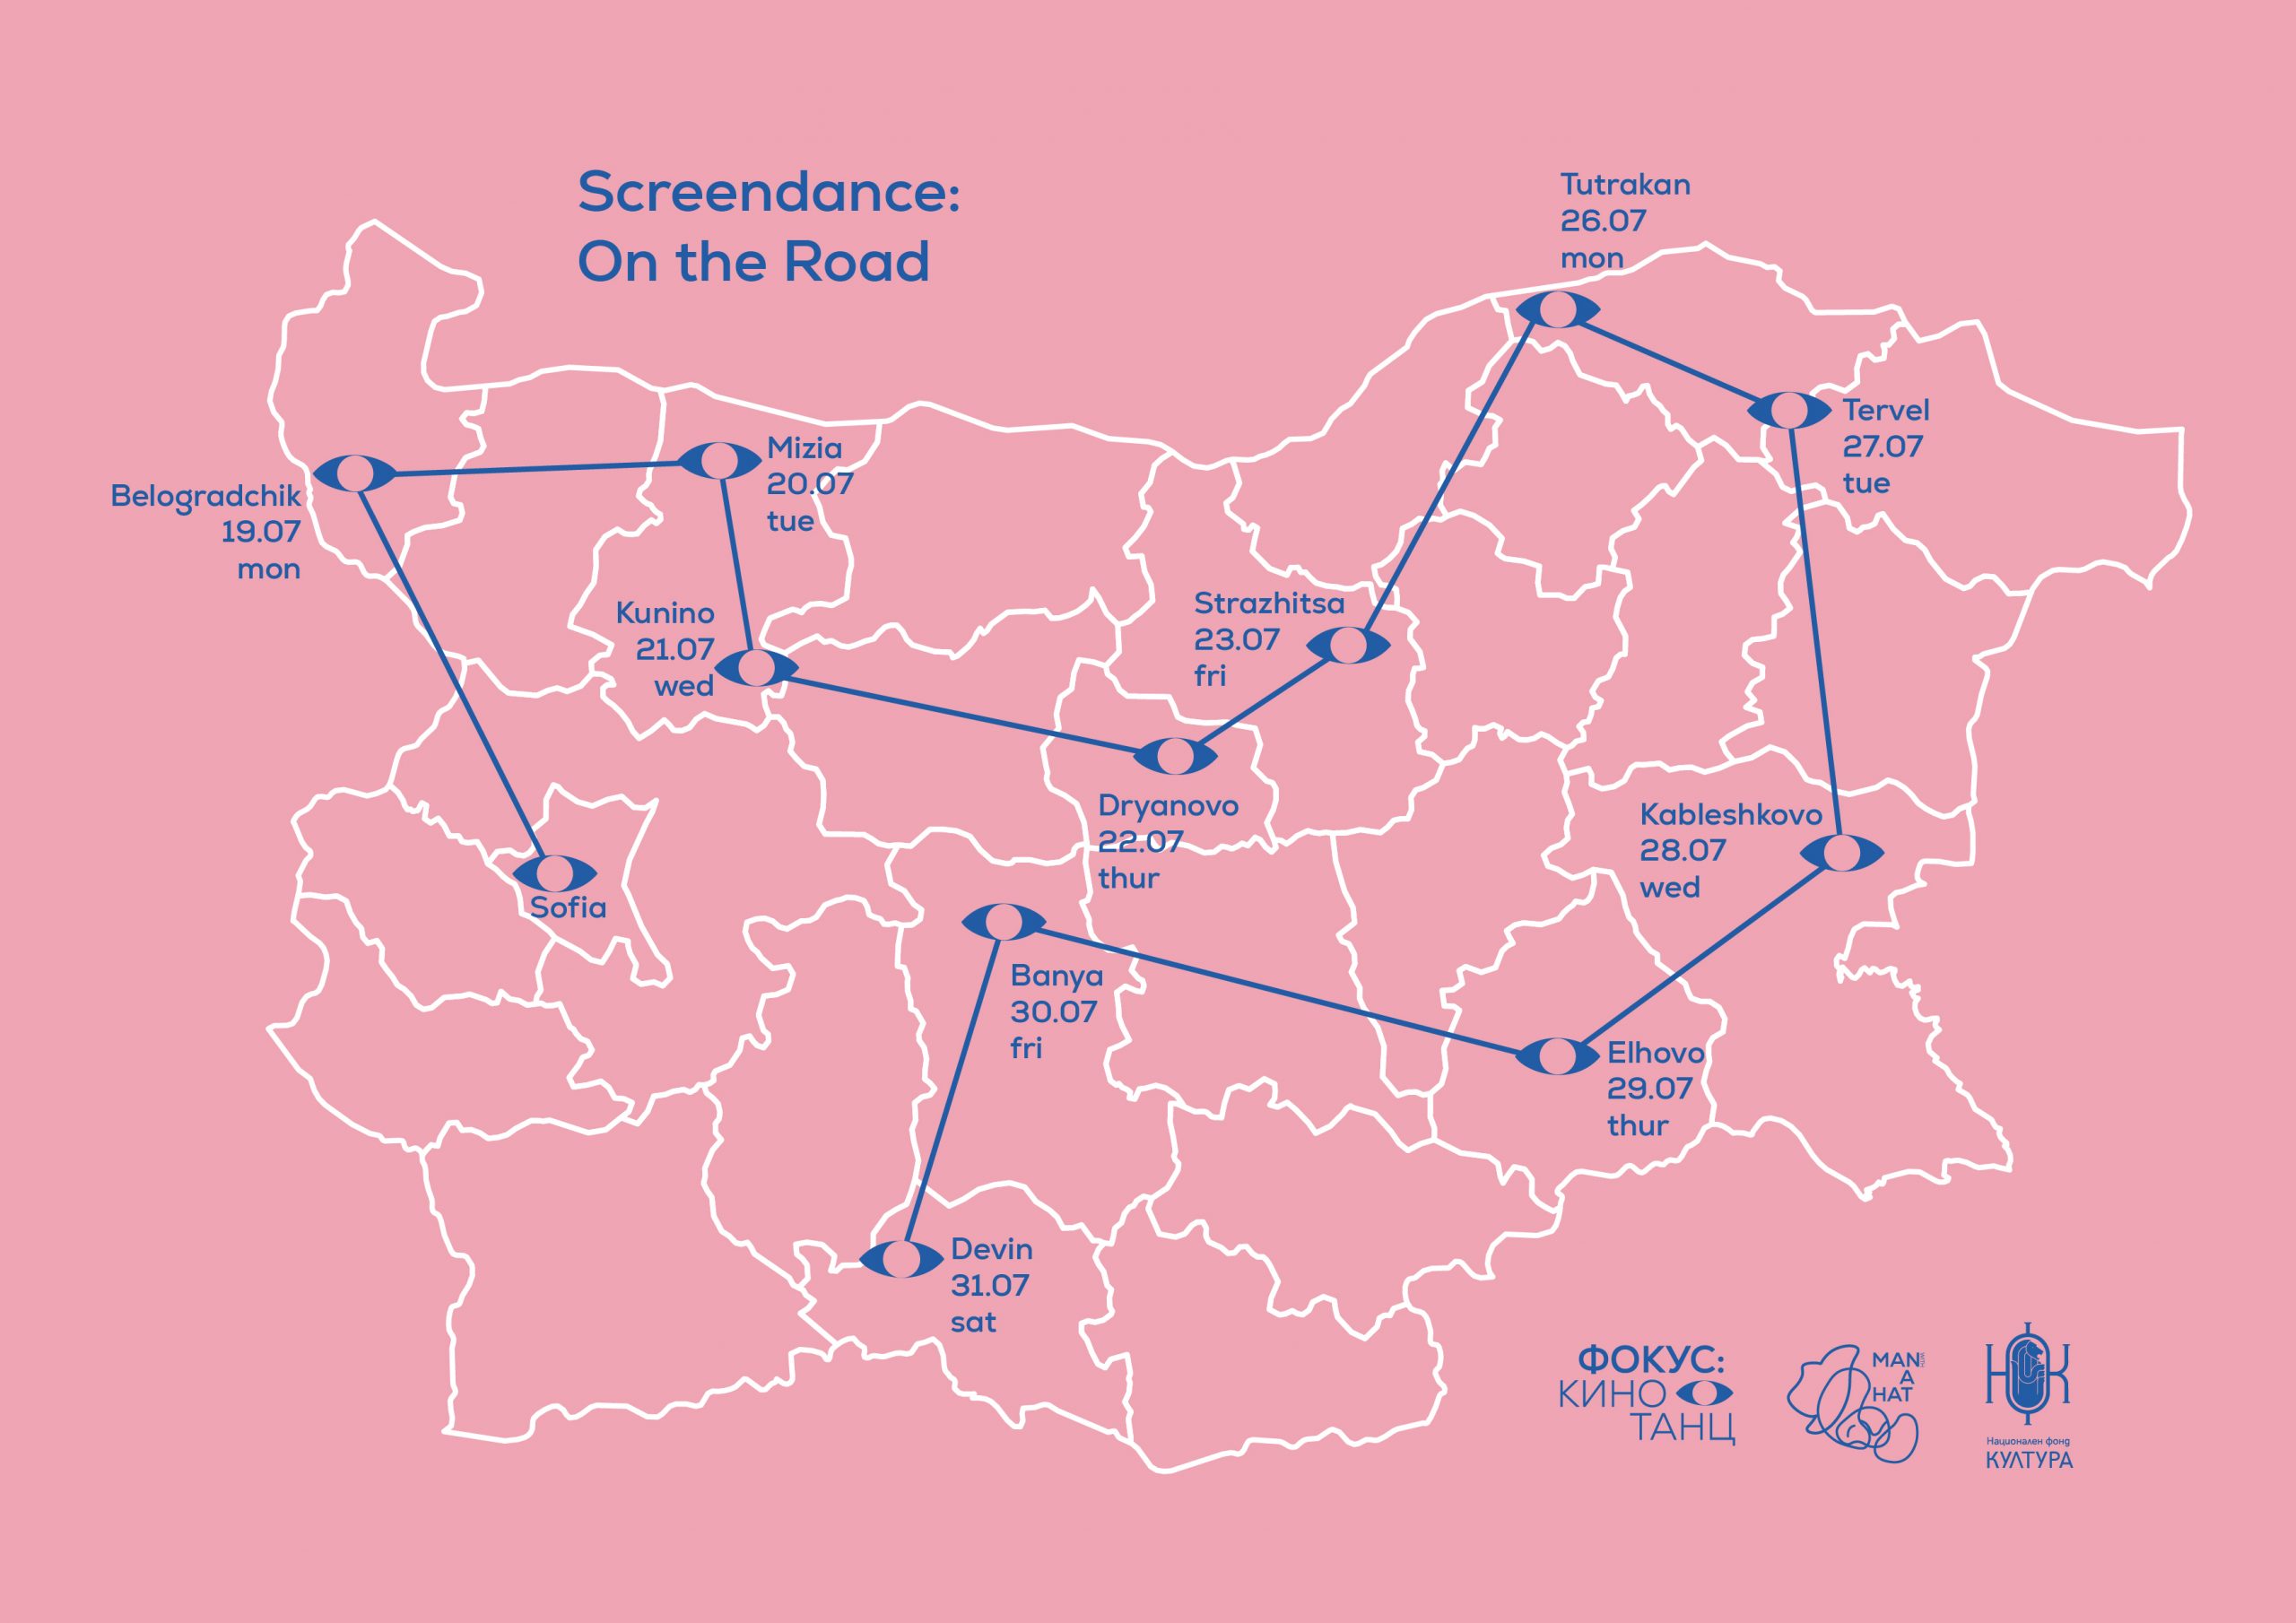 Screendance: On the Road in Bulgaria